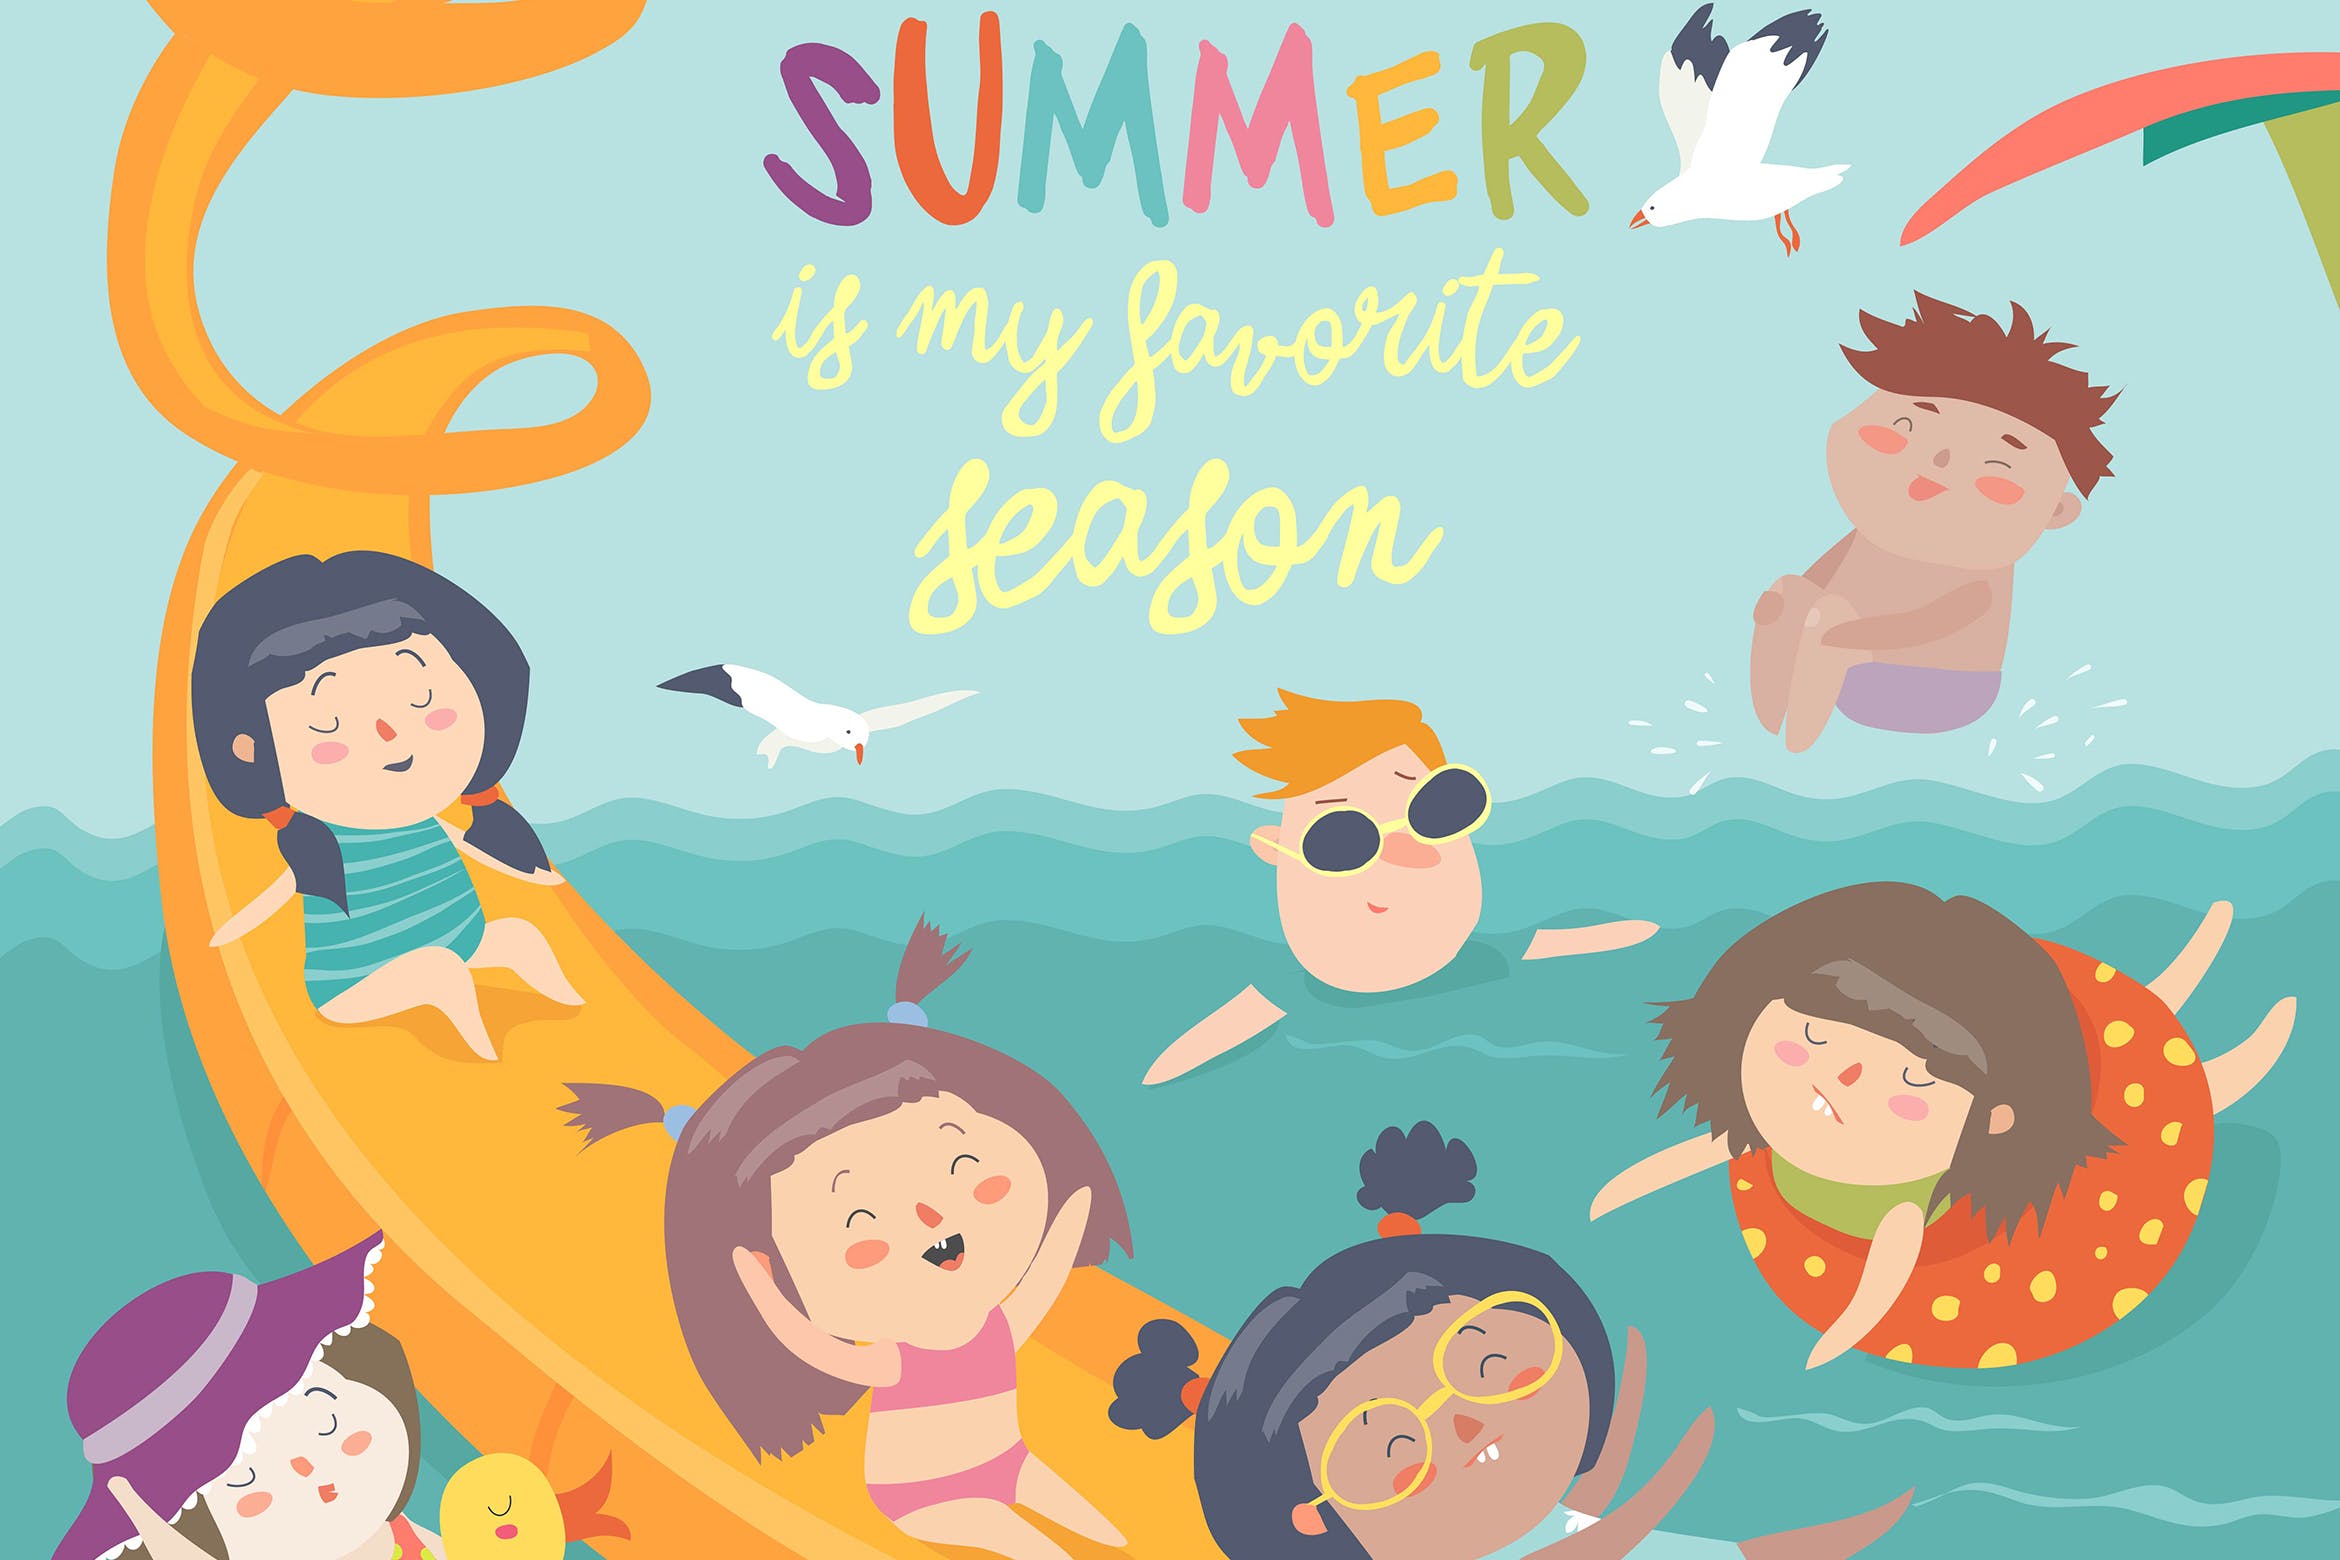 主题矢量插画,可用于夏日假期项目,儿童乐园推广,水上乐园活动宣传